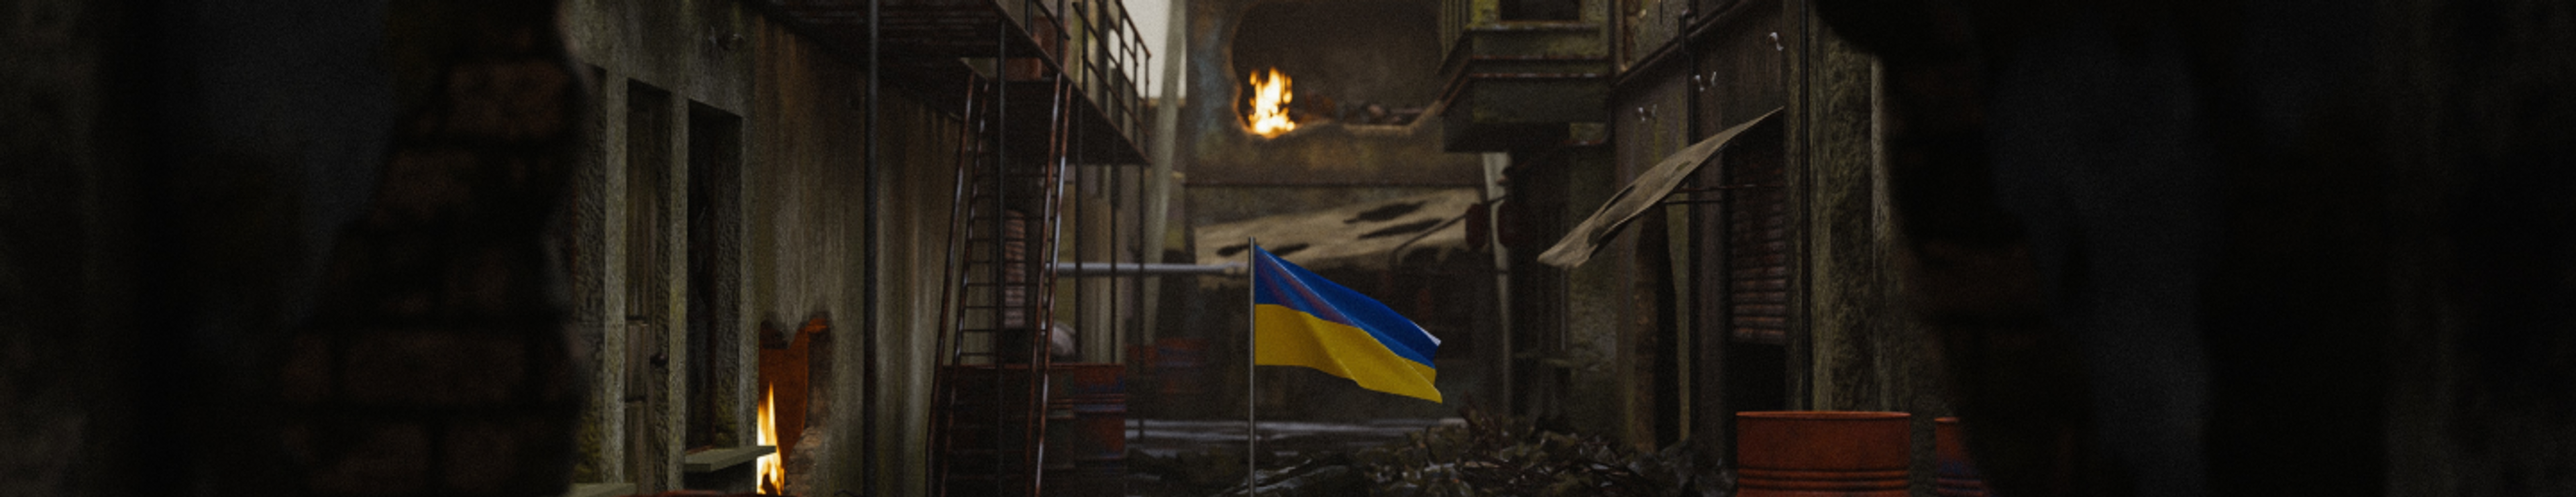 Ukrainian Flag in Shelter